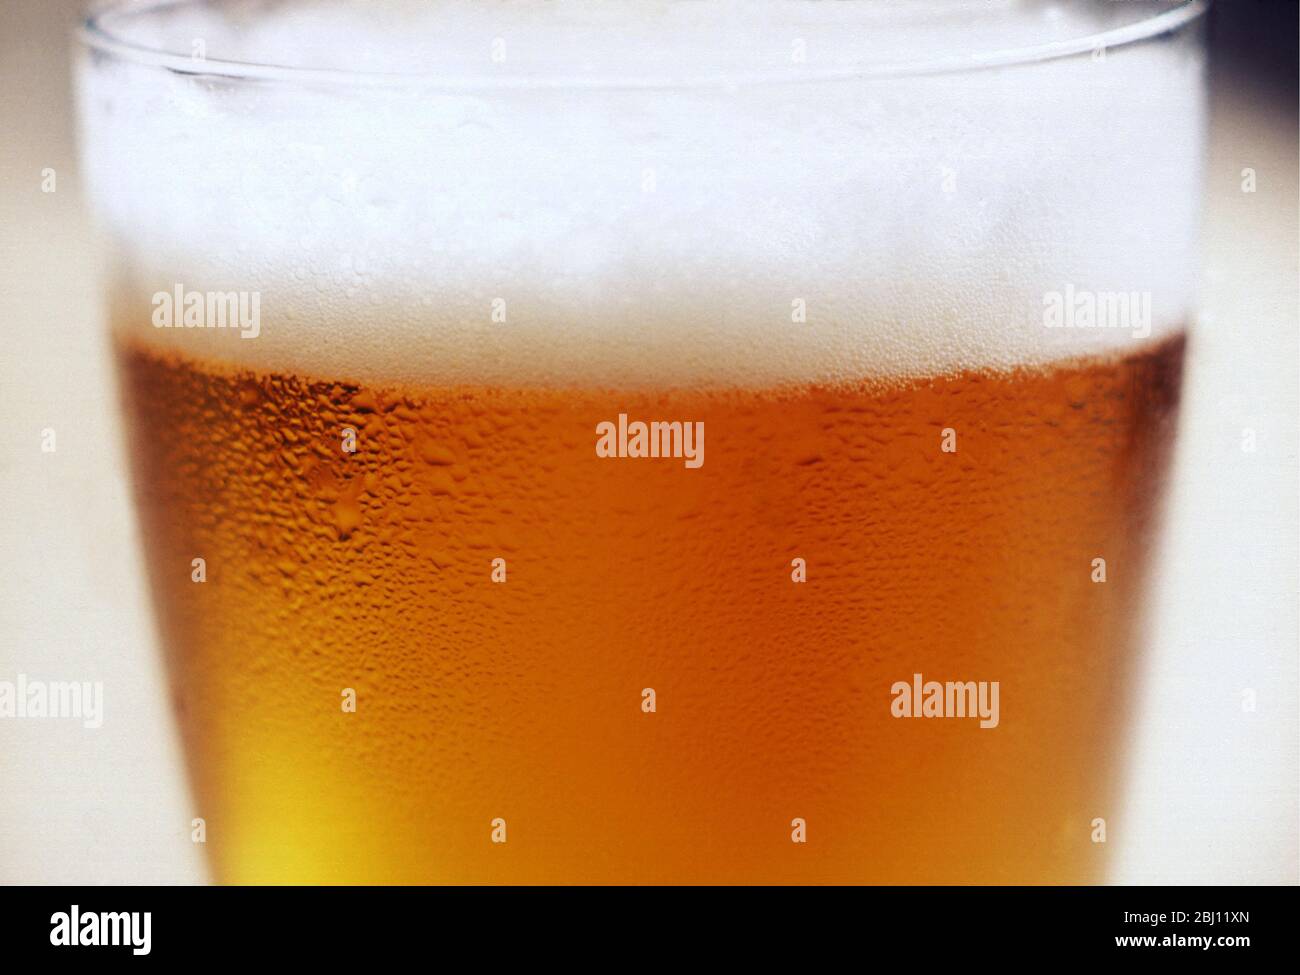 Detalle de primer plano de un vaso de cerveza o una cerveza con cabeza espumosa - Foto de stock